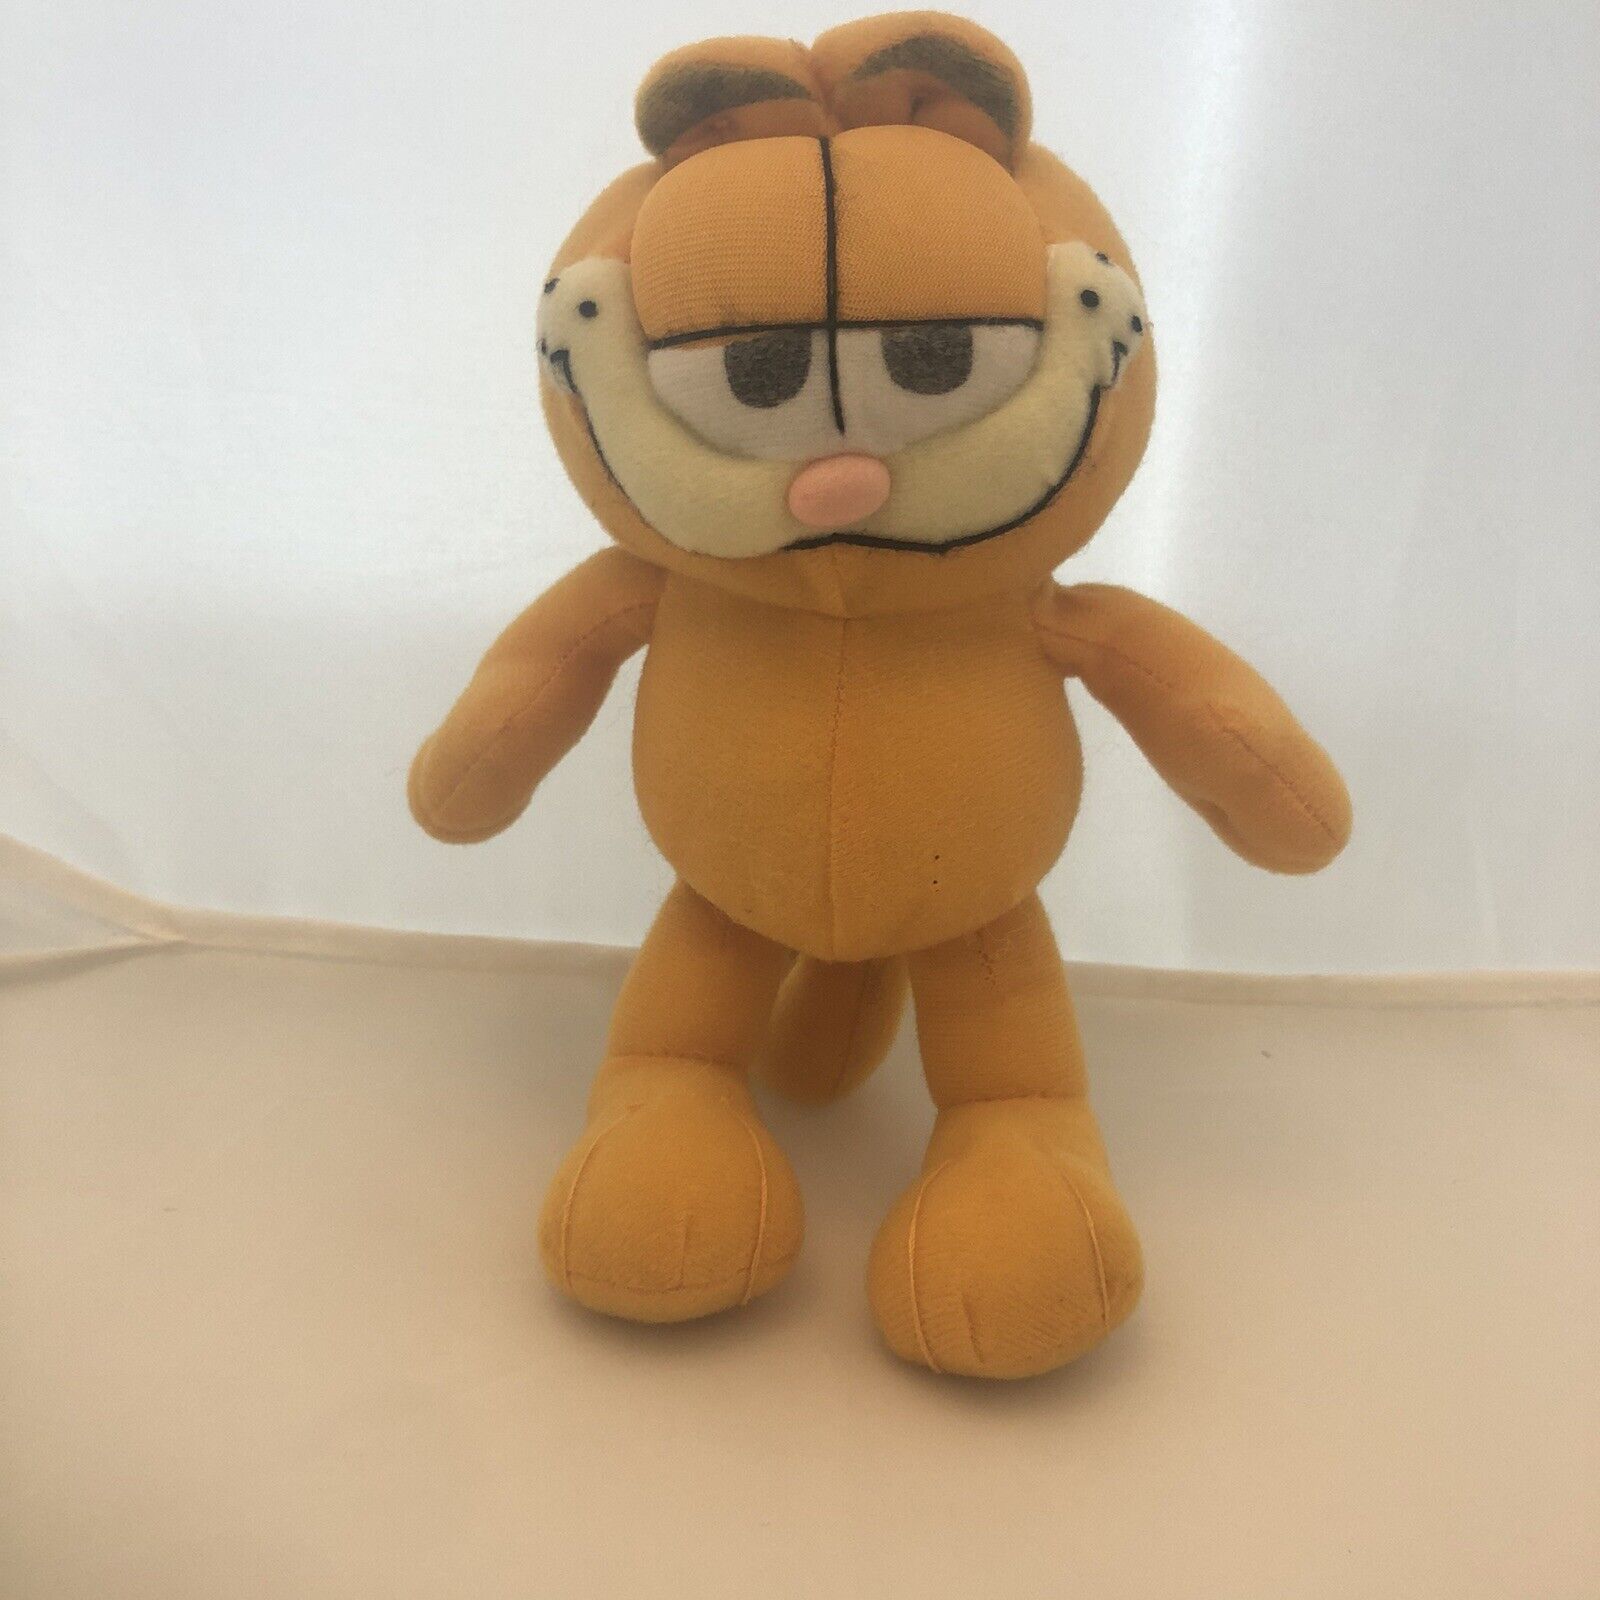 Garfield 7 Inch Plush Doll Missing Tag Felt Cloth Body Please See Description